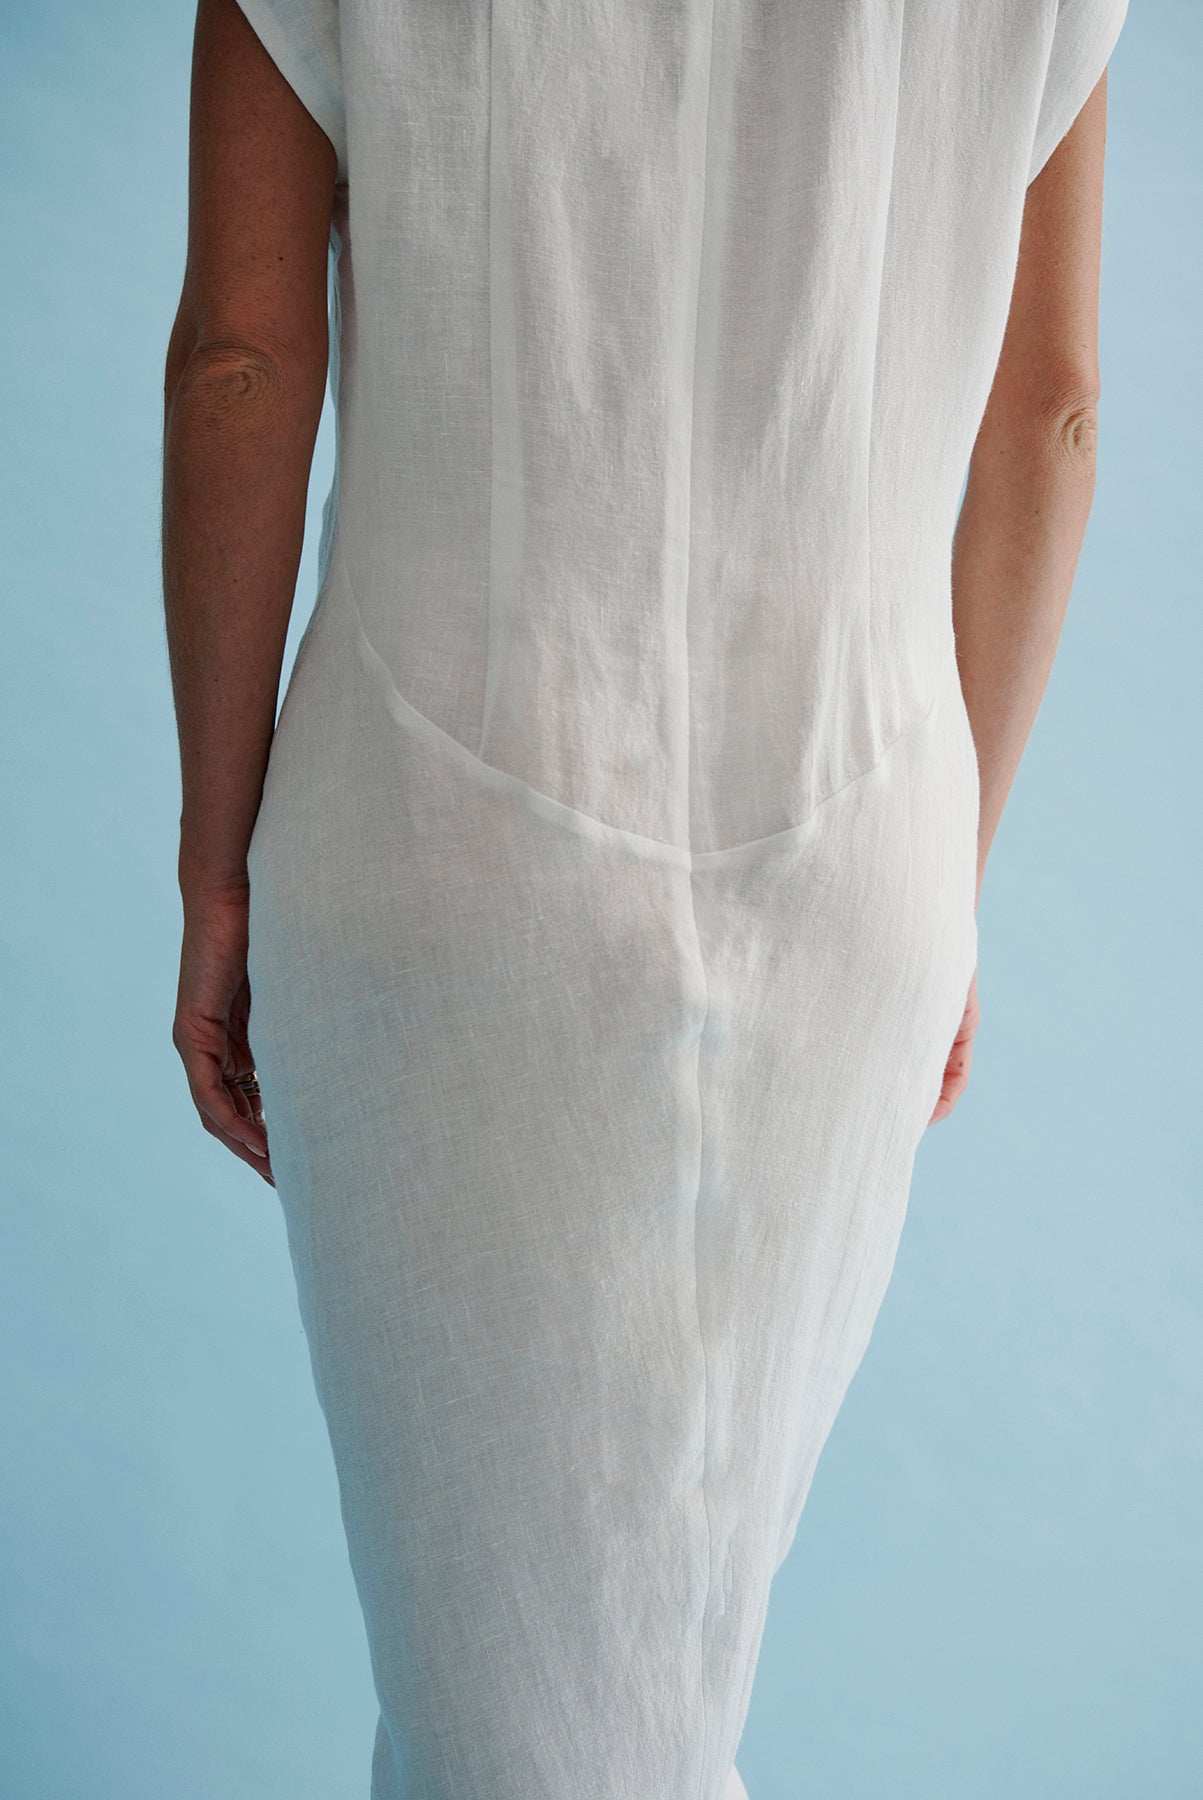 RAYE - Ivory Chambray Linen Ruched Linen Dress